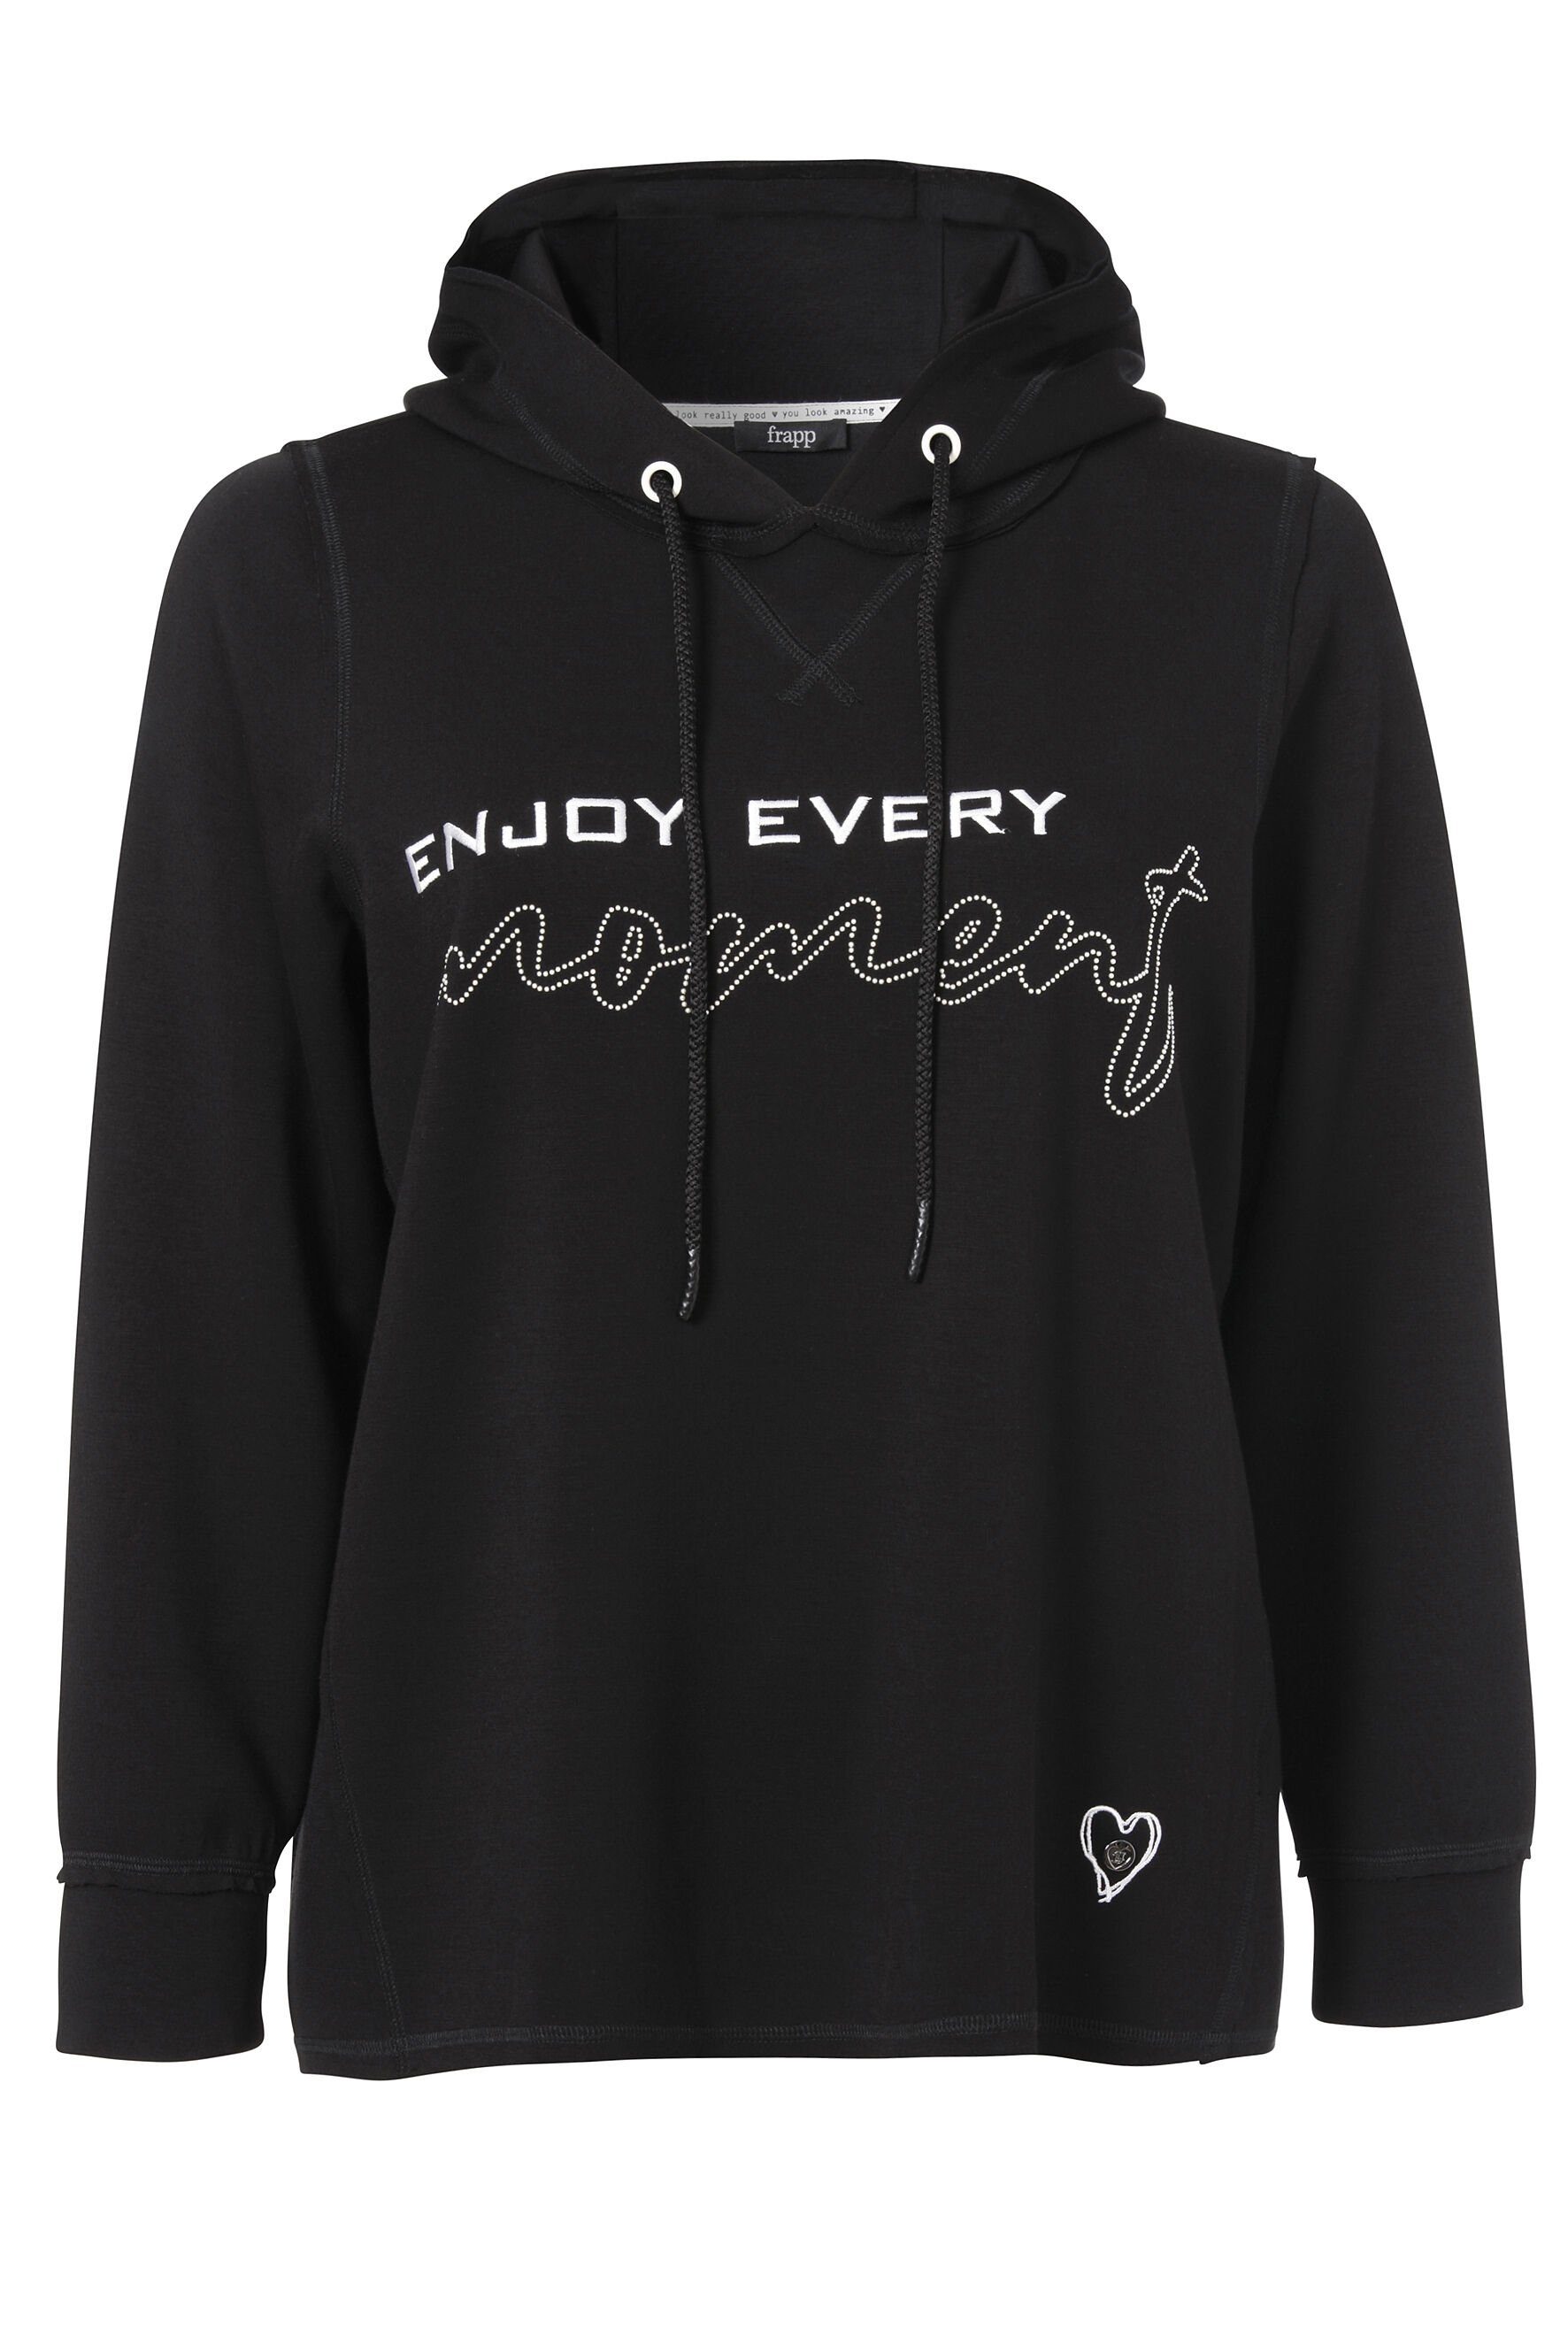 FRAPP Sweatshirt Sportives Kapuzensweatshirt in unifarbenem Stil mit glänzenden Glitzerdetails black / offwhite | Sweatshirts